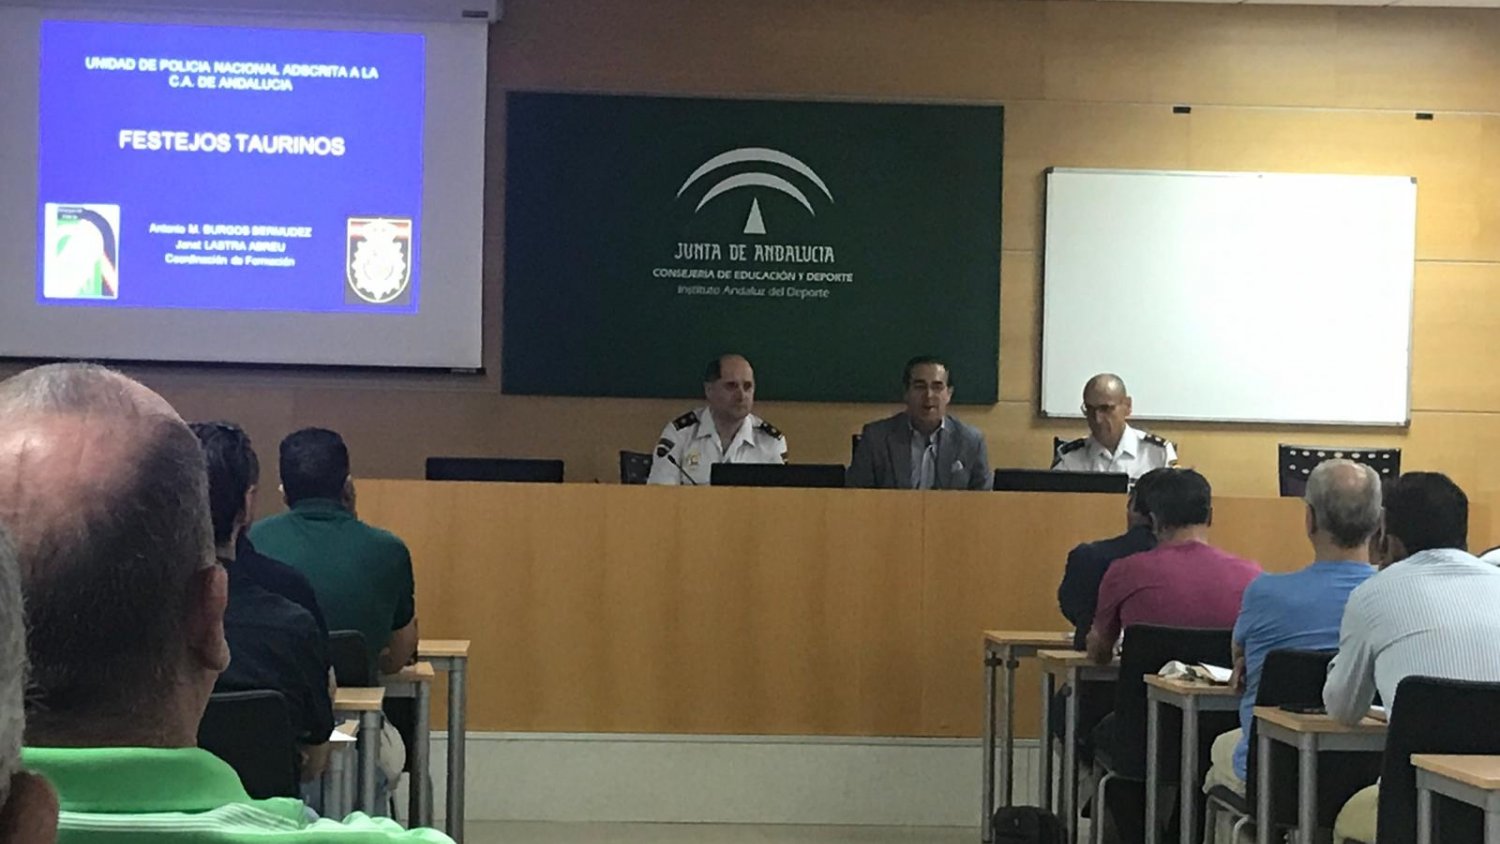 La Junta de Andalucía organiza en Málaga una jornada de formación para autoridades en el marco de los espectáculos taurinos